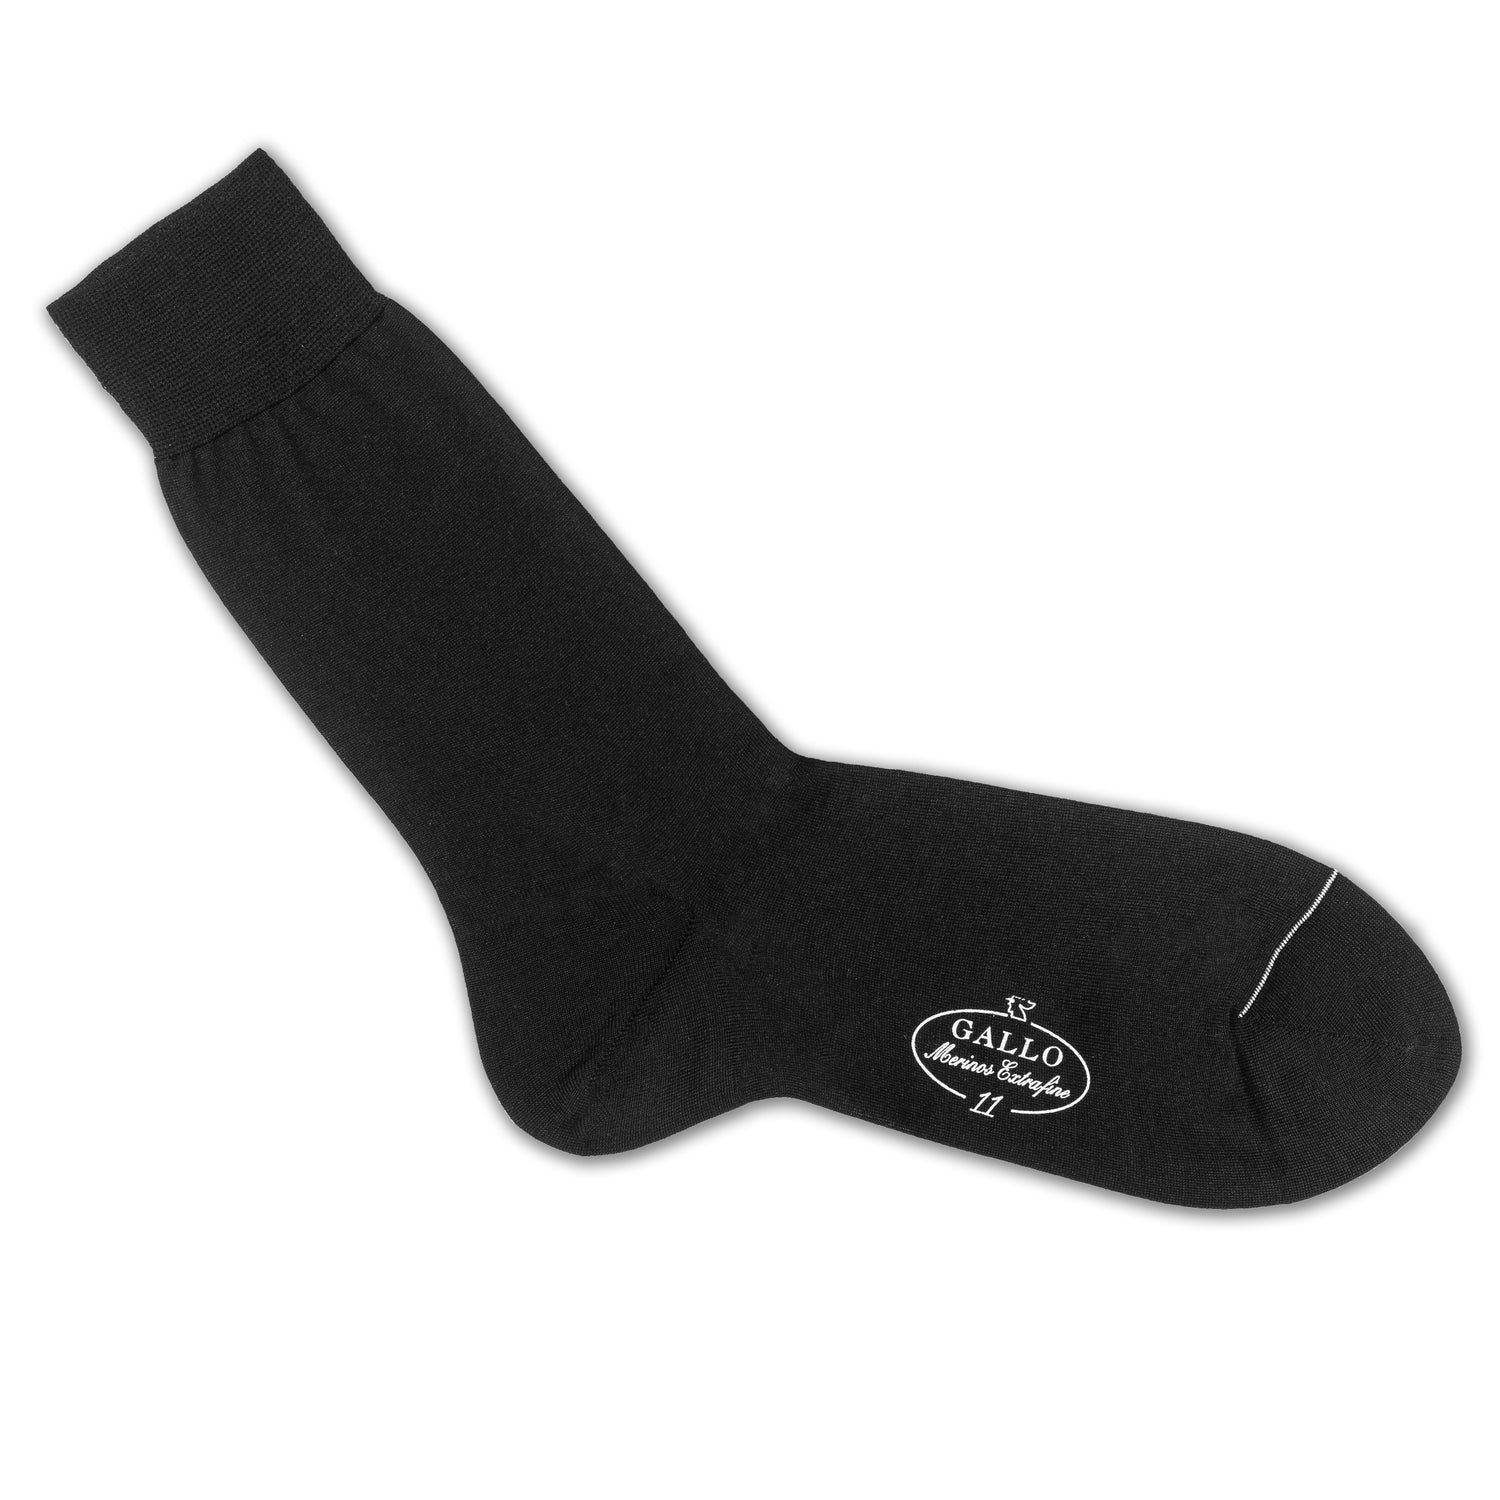 Italienische Herren-Socken in schwarz von GALLO, aus 80% Baumwolle mit 20% Polyamid. Glatte Optik. Gefertigt in Italien. Ansicht Einzelsocke 